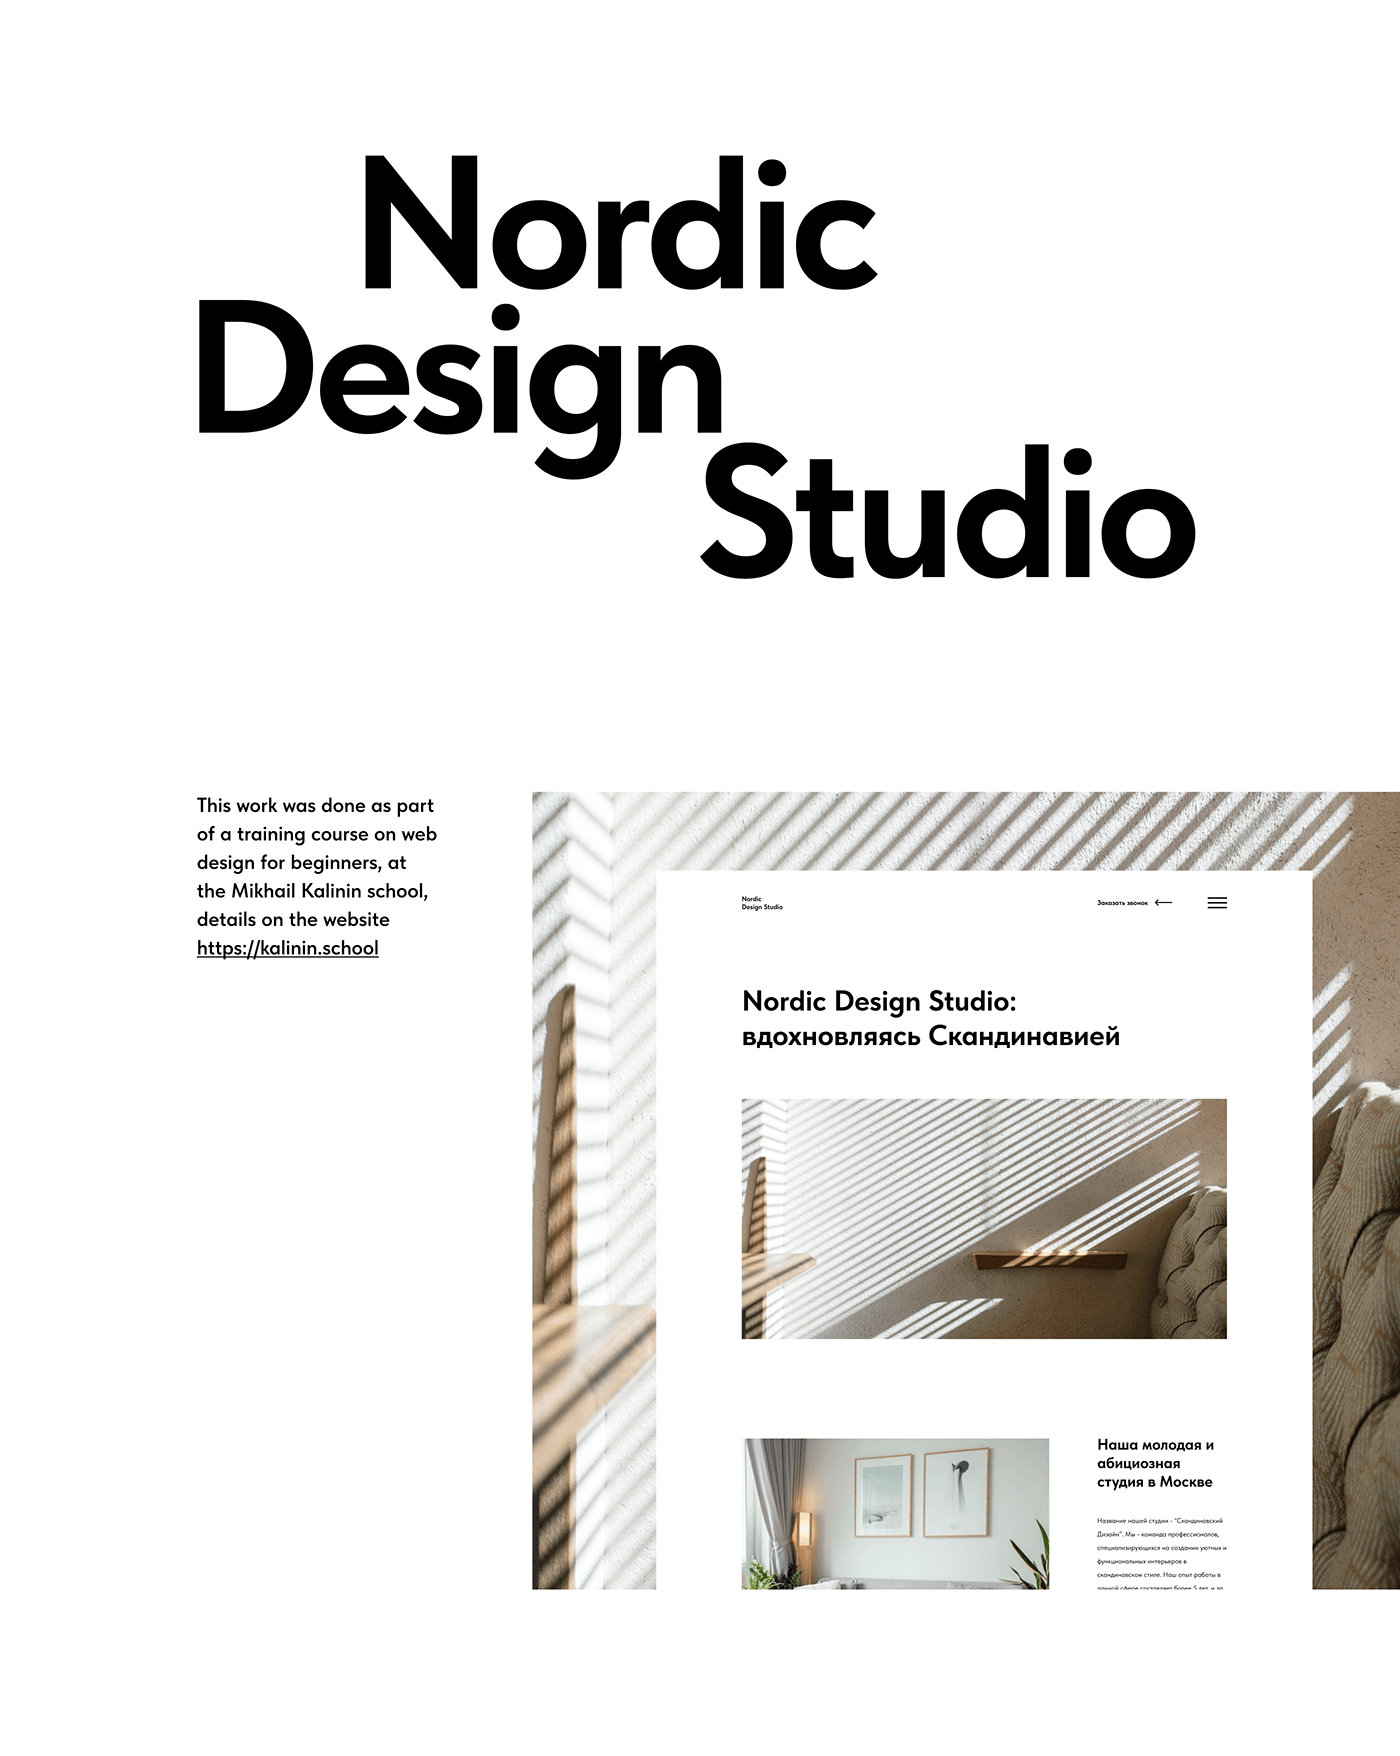 Nordic Design Studio, website design, minimalism, swiss grid. 
Design school of Kalinin Michael
